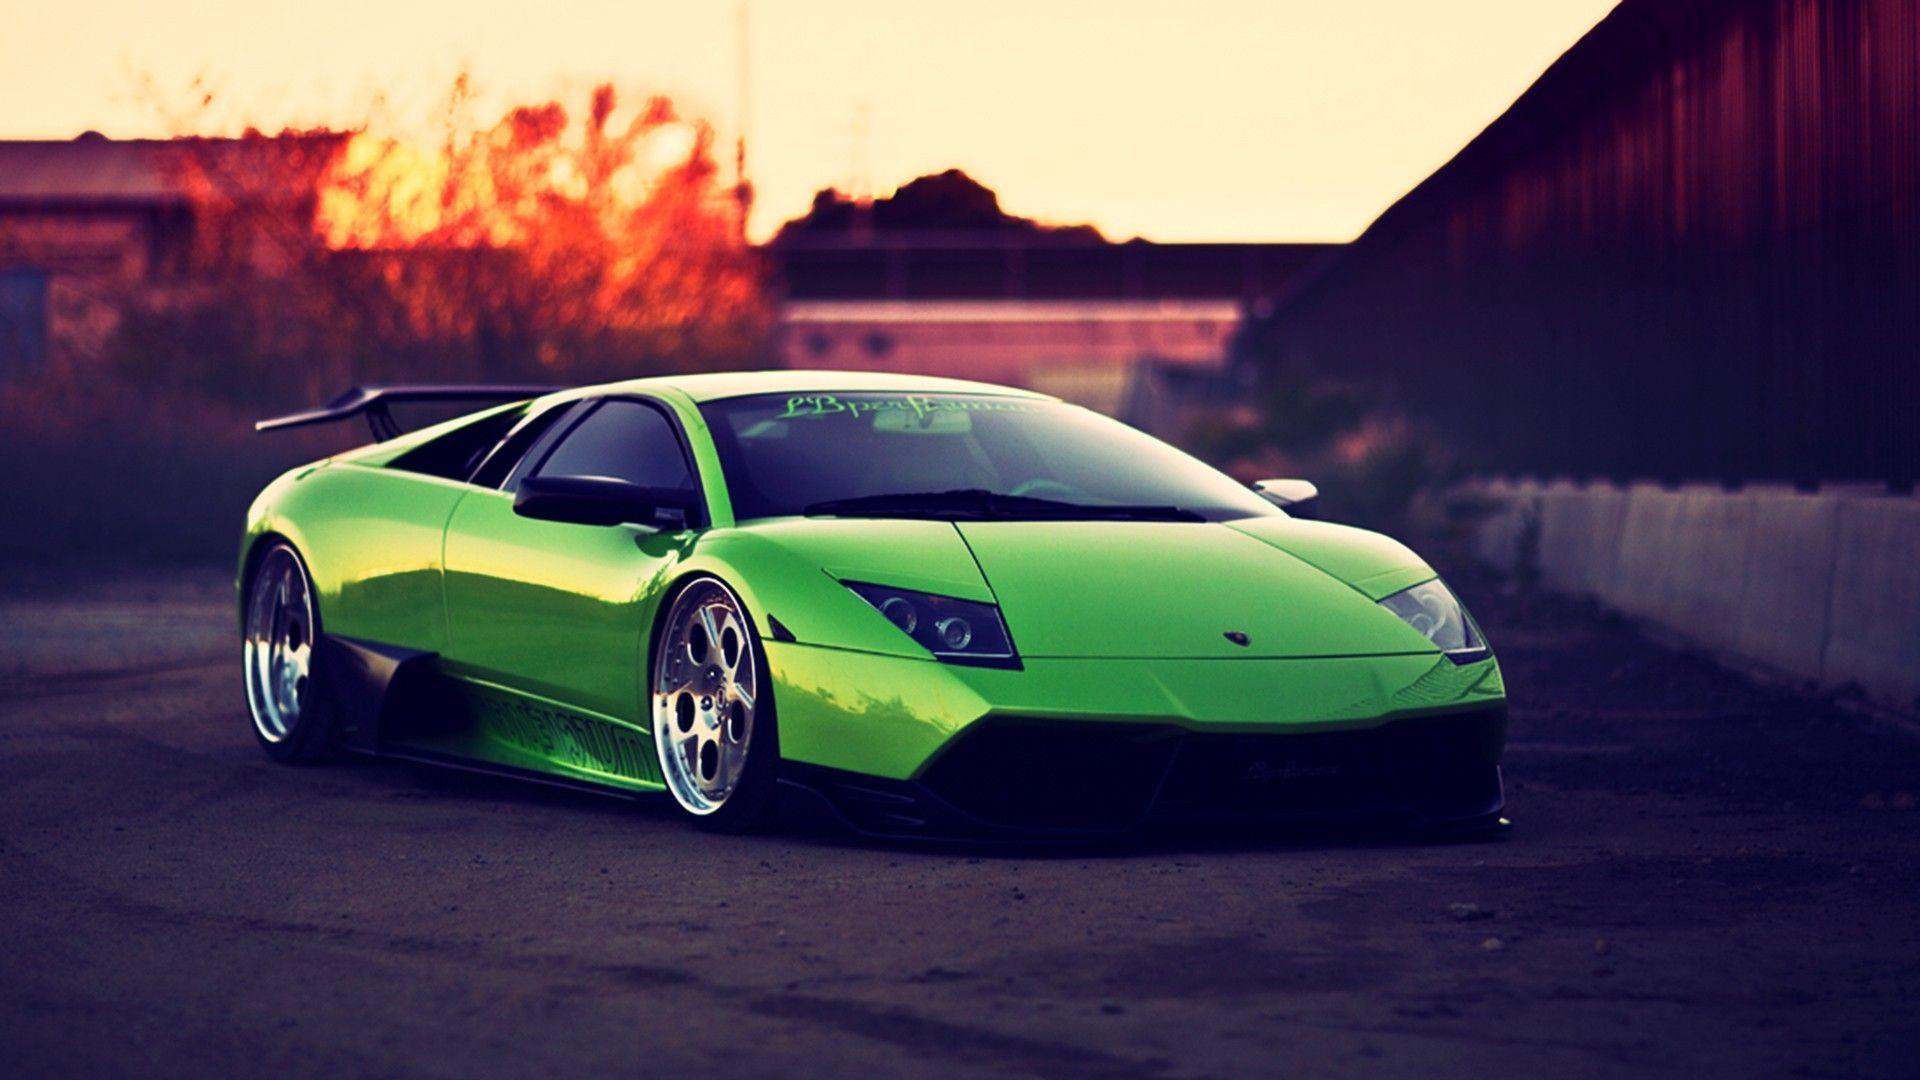 Green Lamborghini Wallpapers - Top Những Hình Ảnh Đẹp